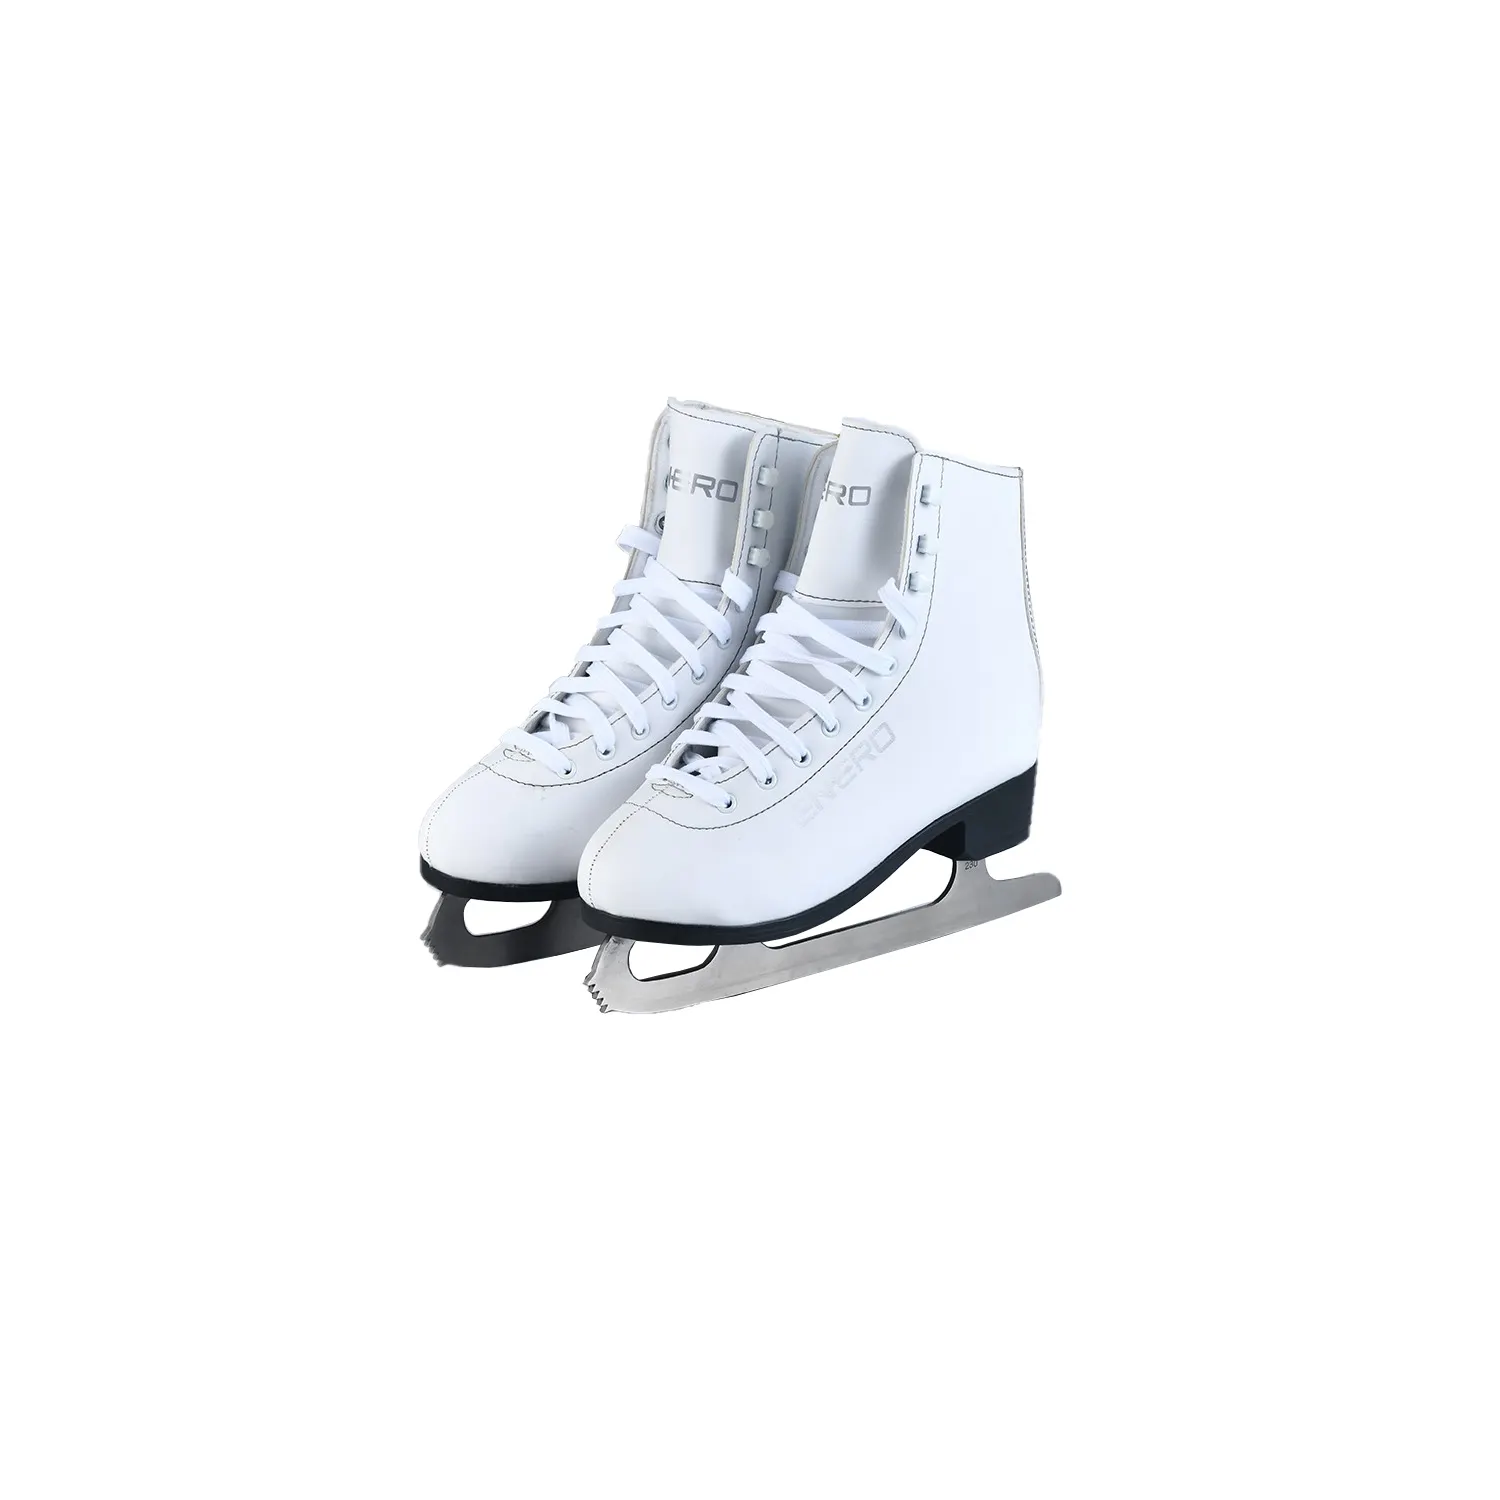 Patine all'ingrosso della fabbrica ice skate Multi color Shinning Leather Quad Skate con adesivi alla vaniglia con doppio rullo leggero